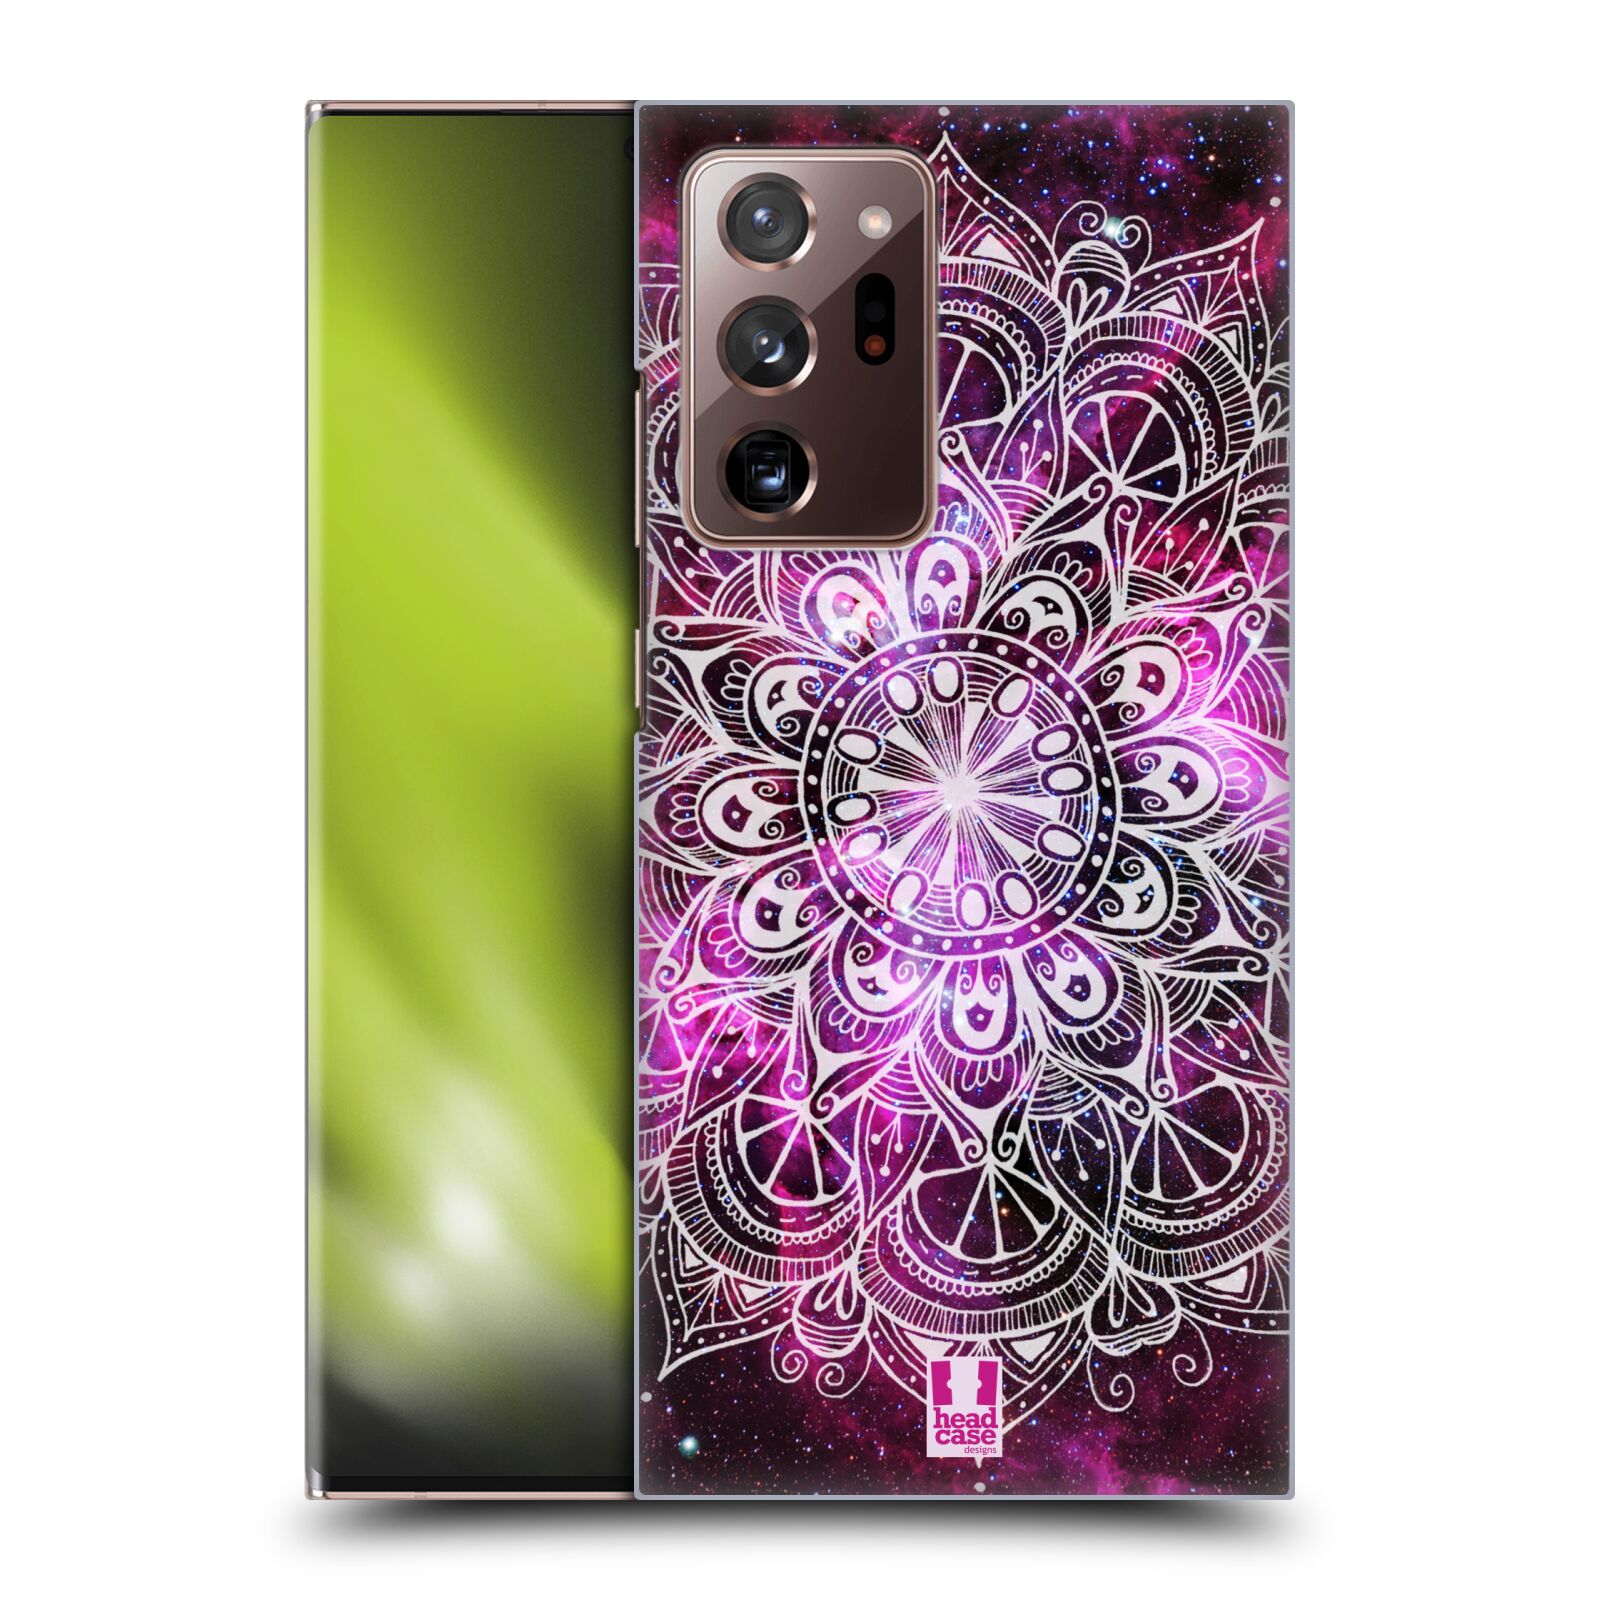 Plastový obal HEAD CASE na mobil Samsung Galaxy Note 20 ULTRA vzor Indie Mandala slunce barevná FIALOVÁ MLHOVINA